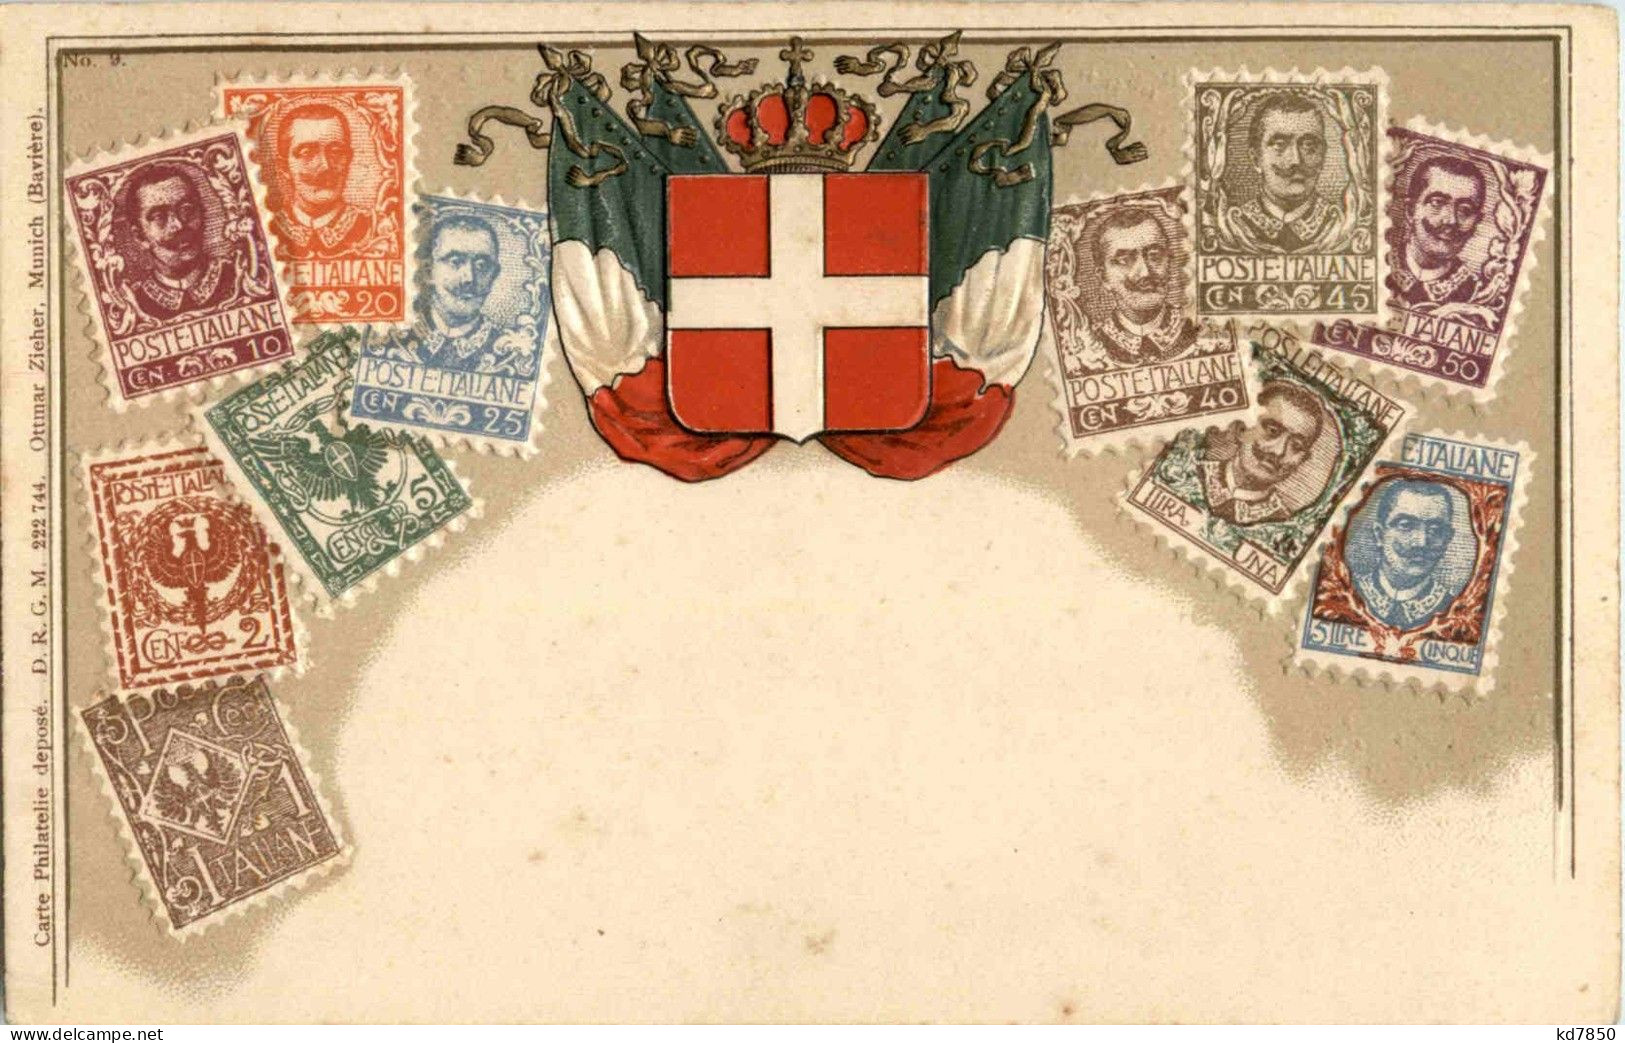 Italy - Briefmarken - Stamps - Prägekarte - Briefmarken (Abbildungen)